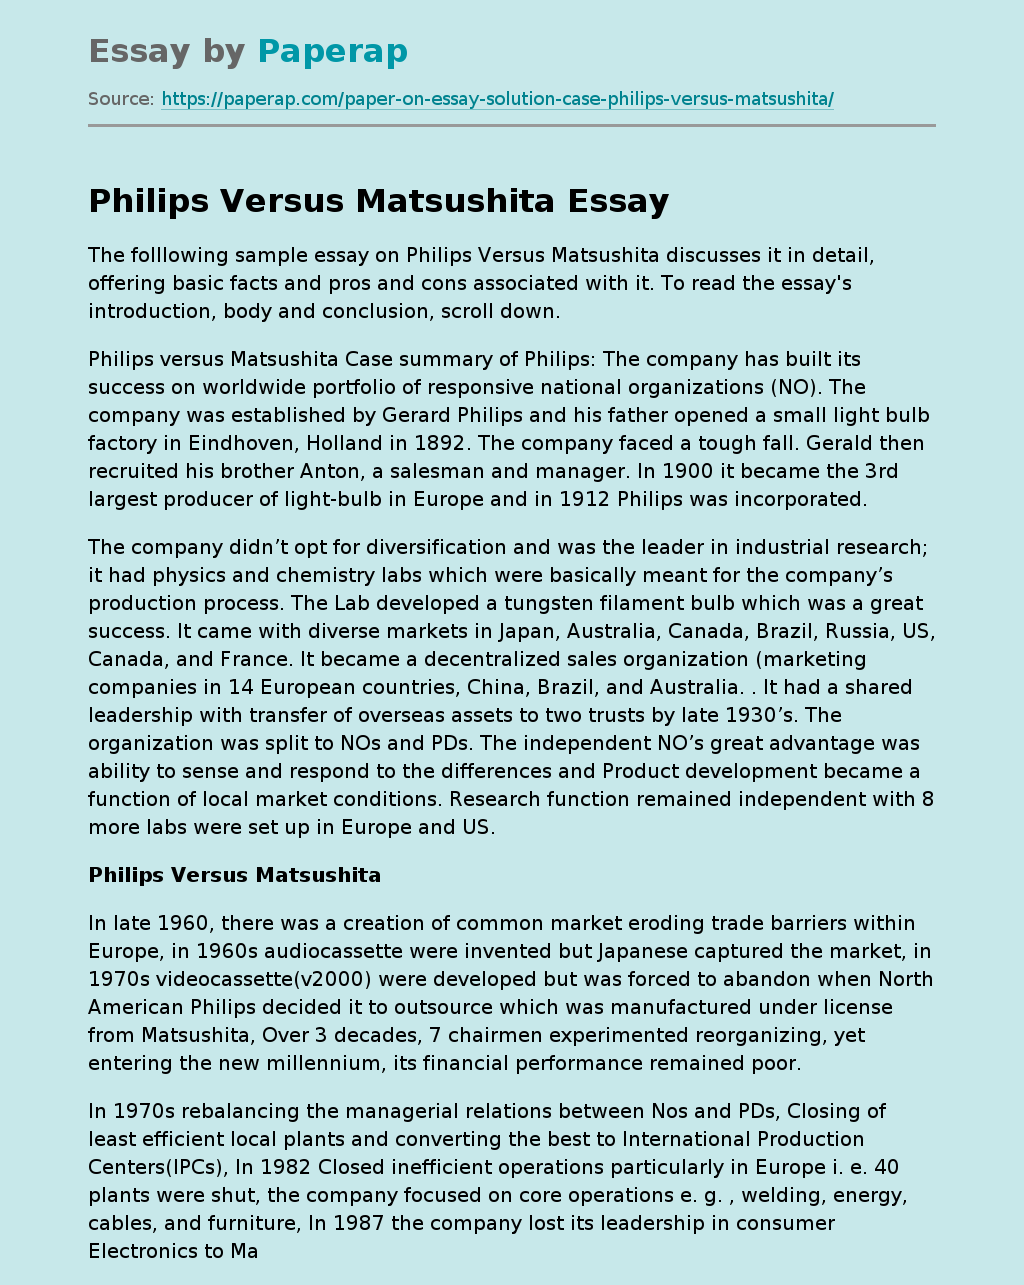 Sample Essay on Philips Versus Matsushita